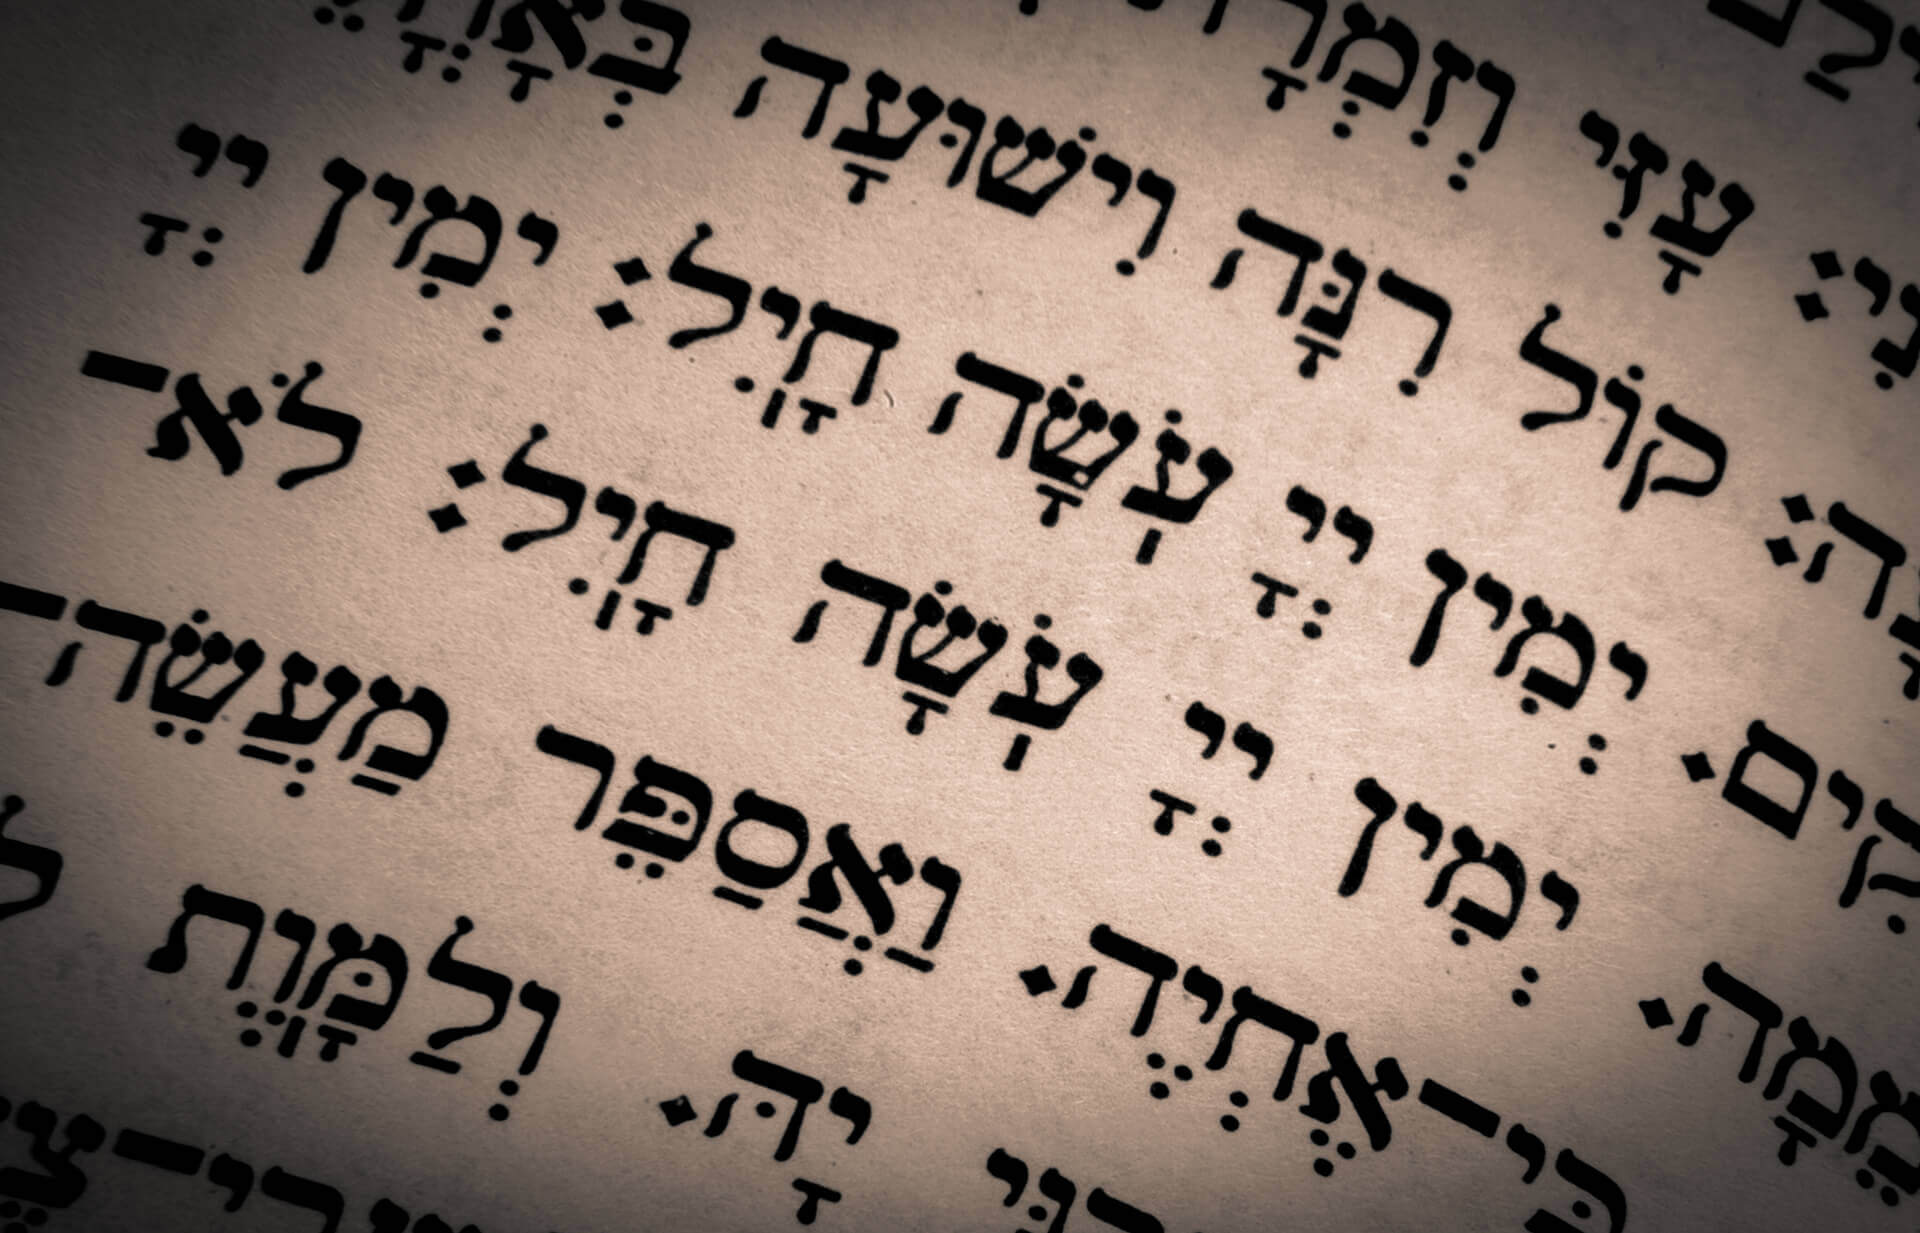 Hebrew short stories 1